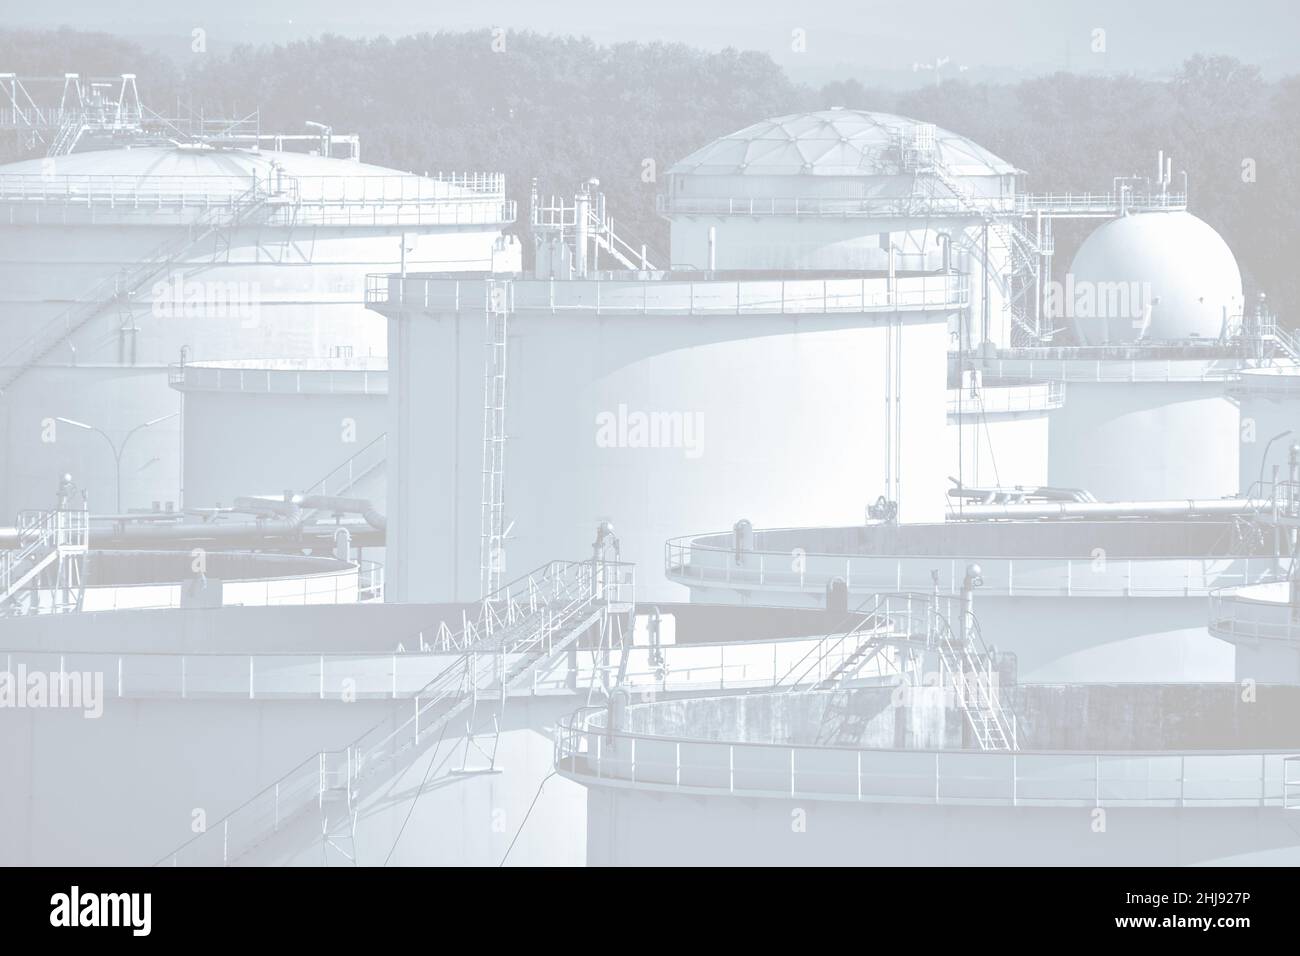 Fotokünstlerische Darstellung eines Behälterlagers in einer Chemieanlage, bestehend aus Flachbodentanks und Kugeltanks. Stockfoto